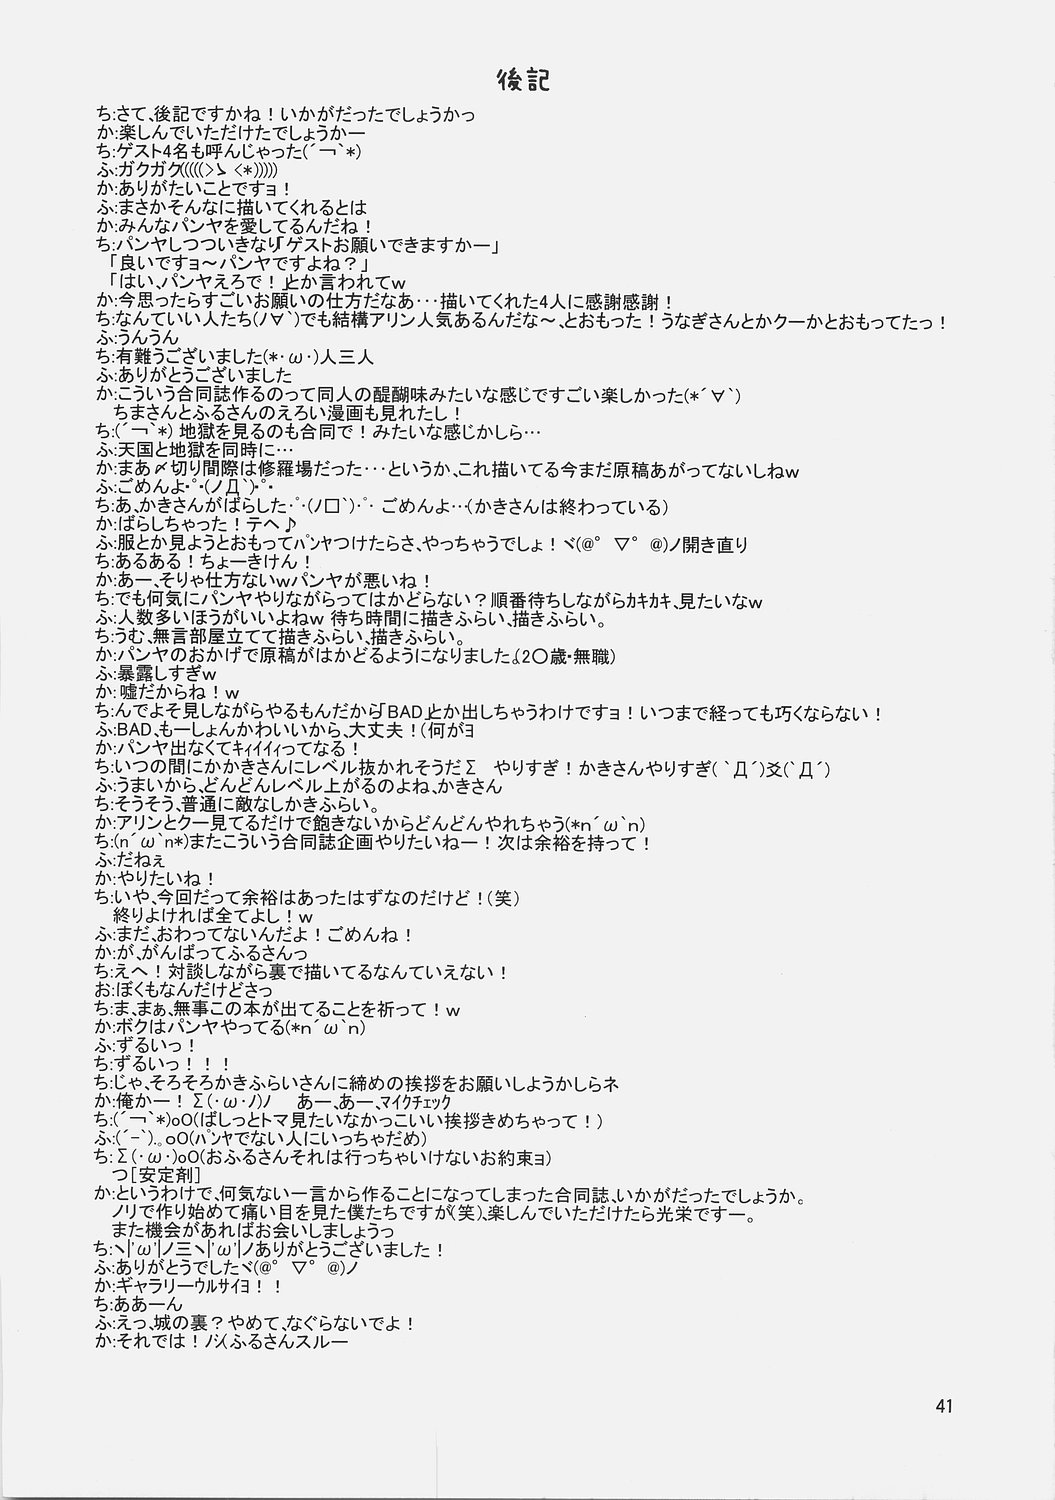 (ComiComi9) [Umi No Sachi Teishoku, Chimaroni?, Fake fur, (Kakifly, Chimaro, Furu)] PanPanPangya (Sukatto Golf Pangya) page 40 full